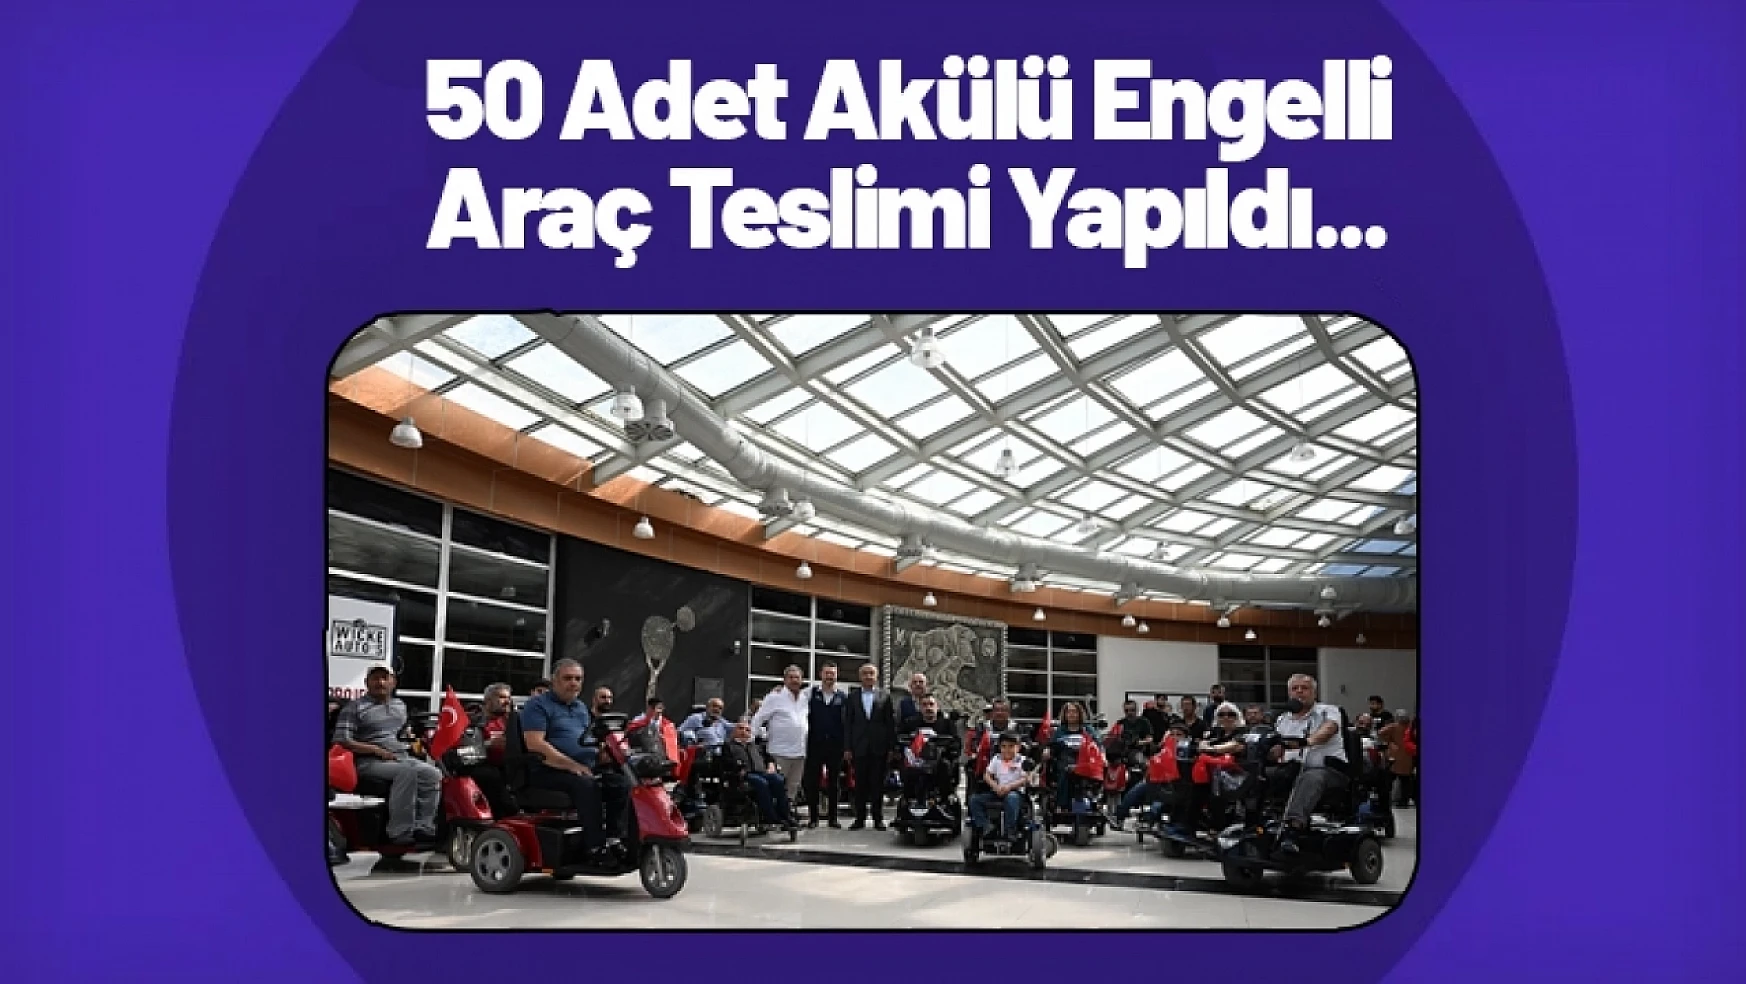 50 Adet Akülü Engelli Araç Teslimi Yapıldı...